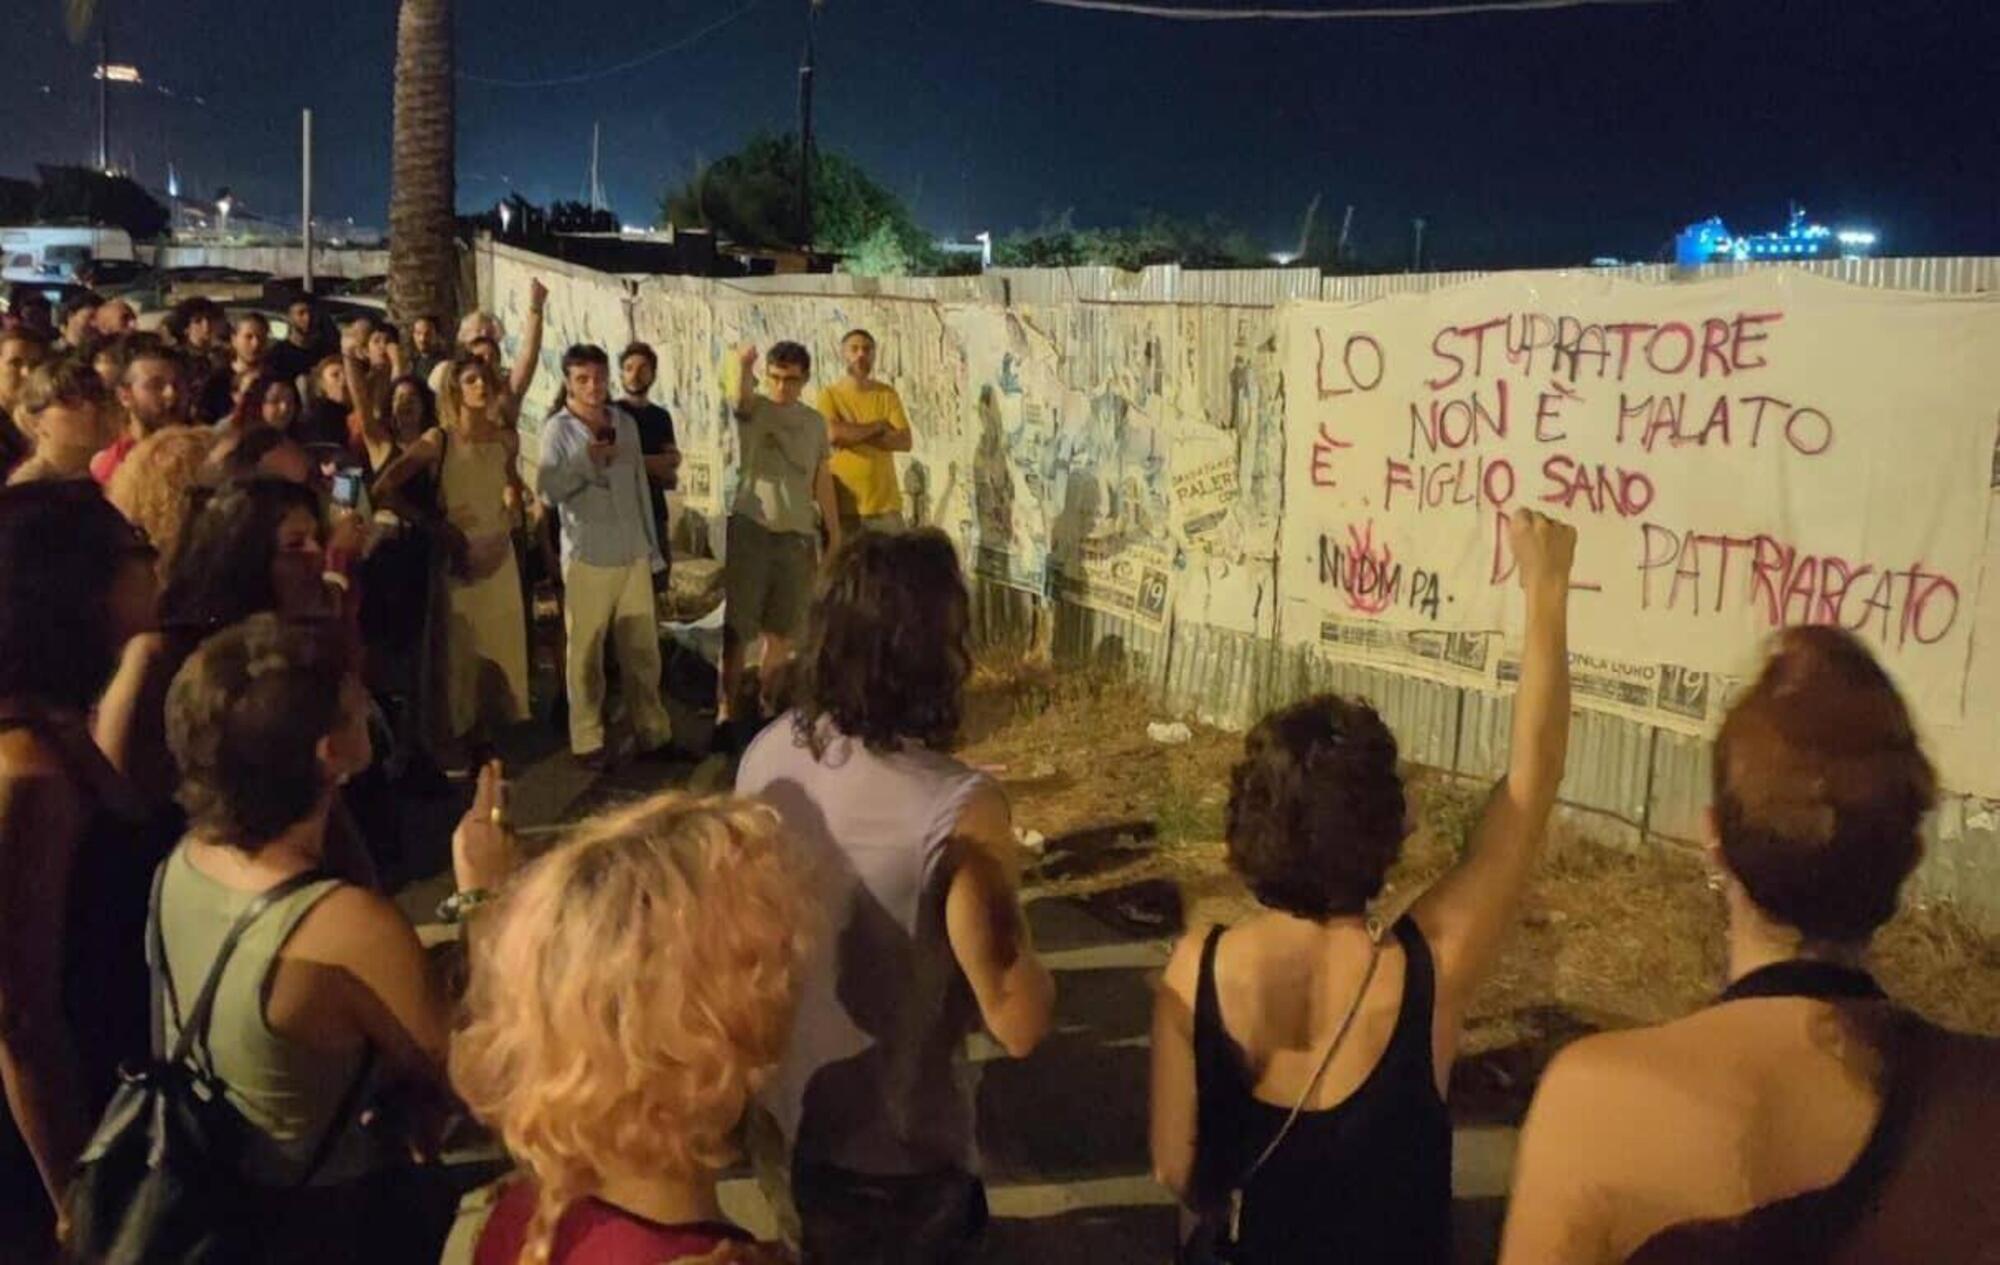 La manifestazione contro i ragazzi che hanno stuprato una ragazza a Palermo